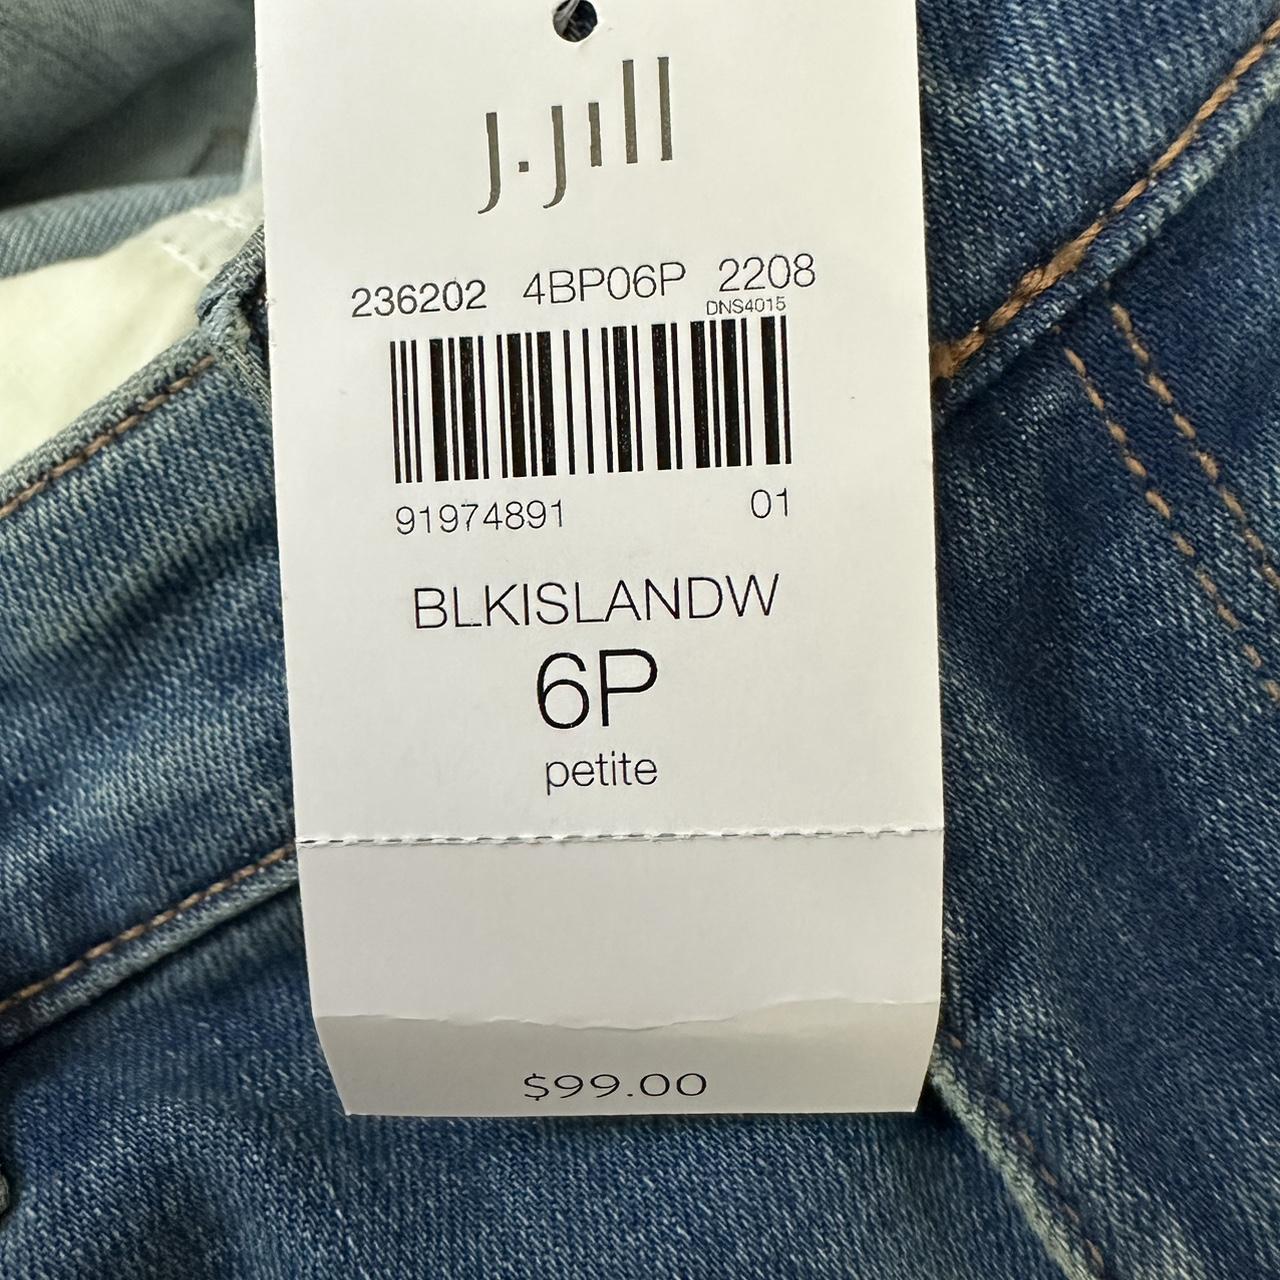 J. Jill, Jeans